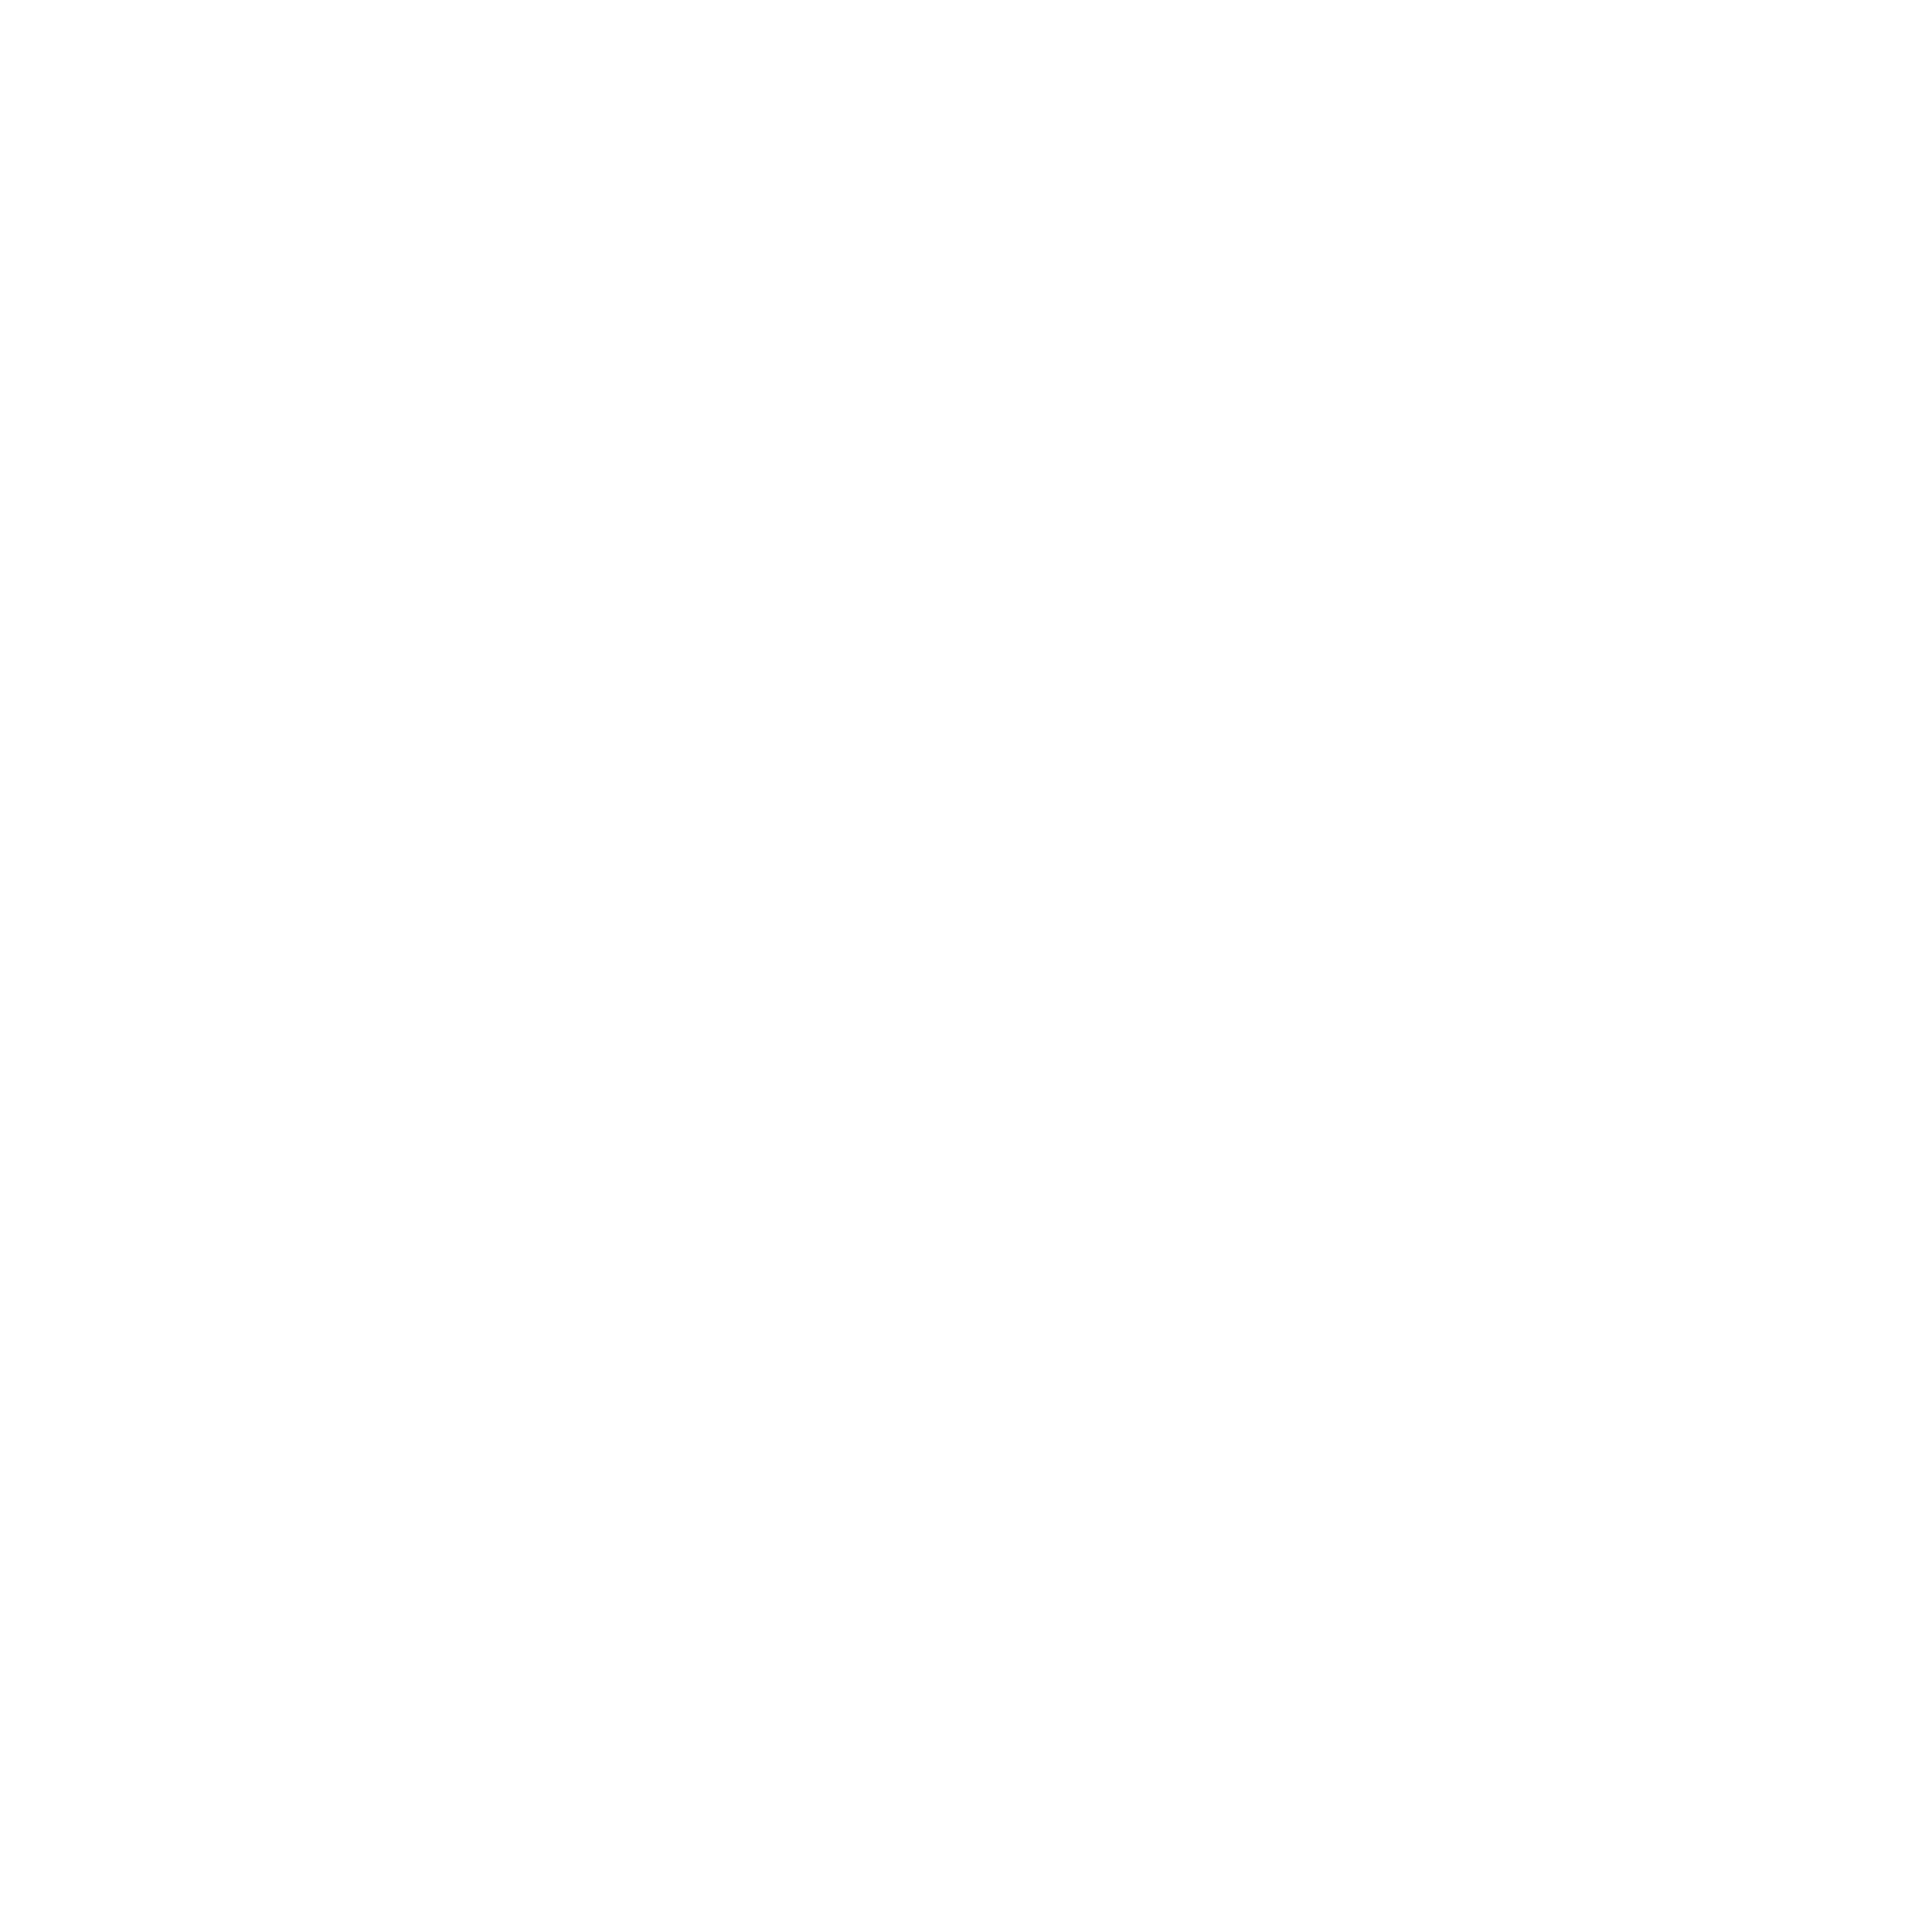 Nara Stag Club